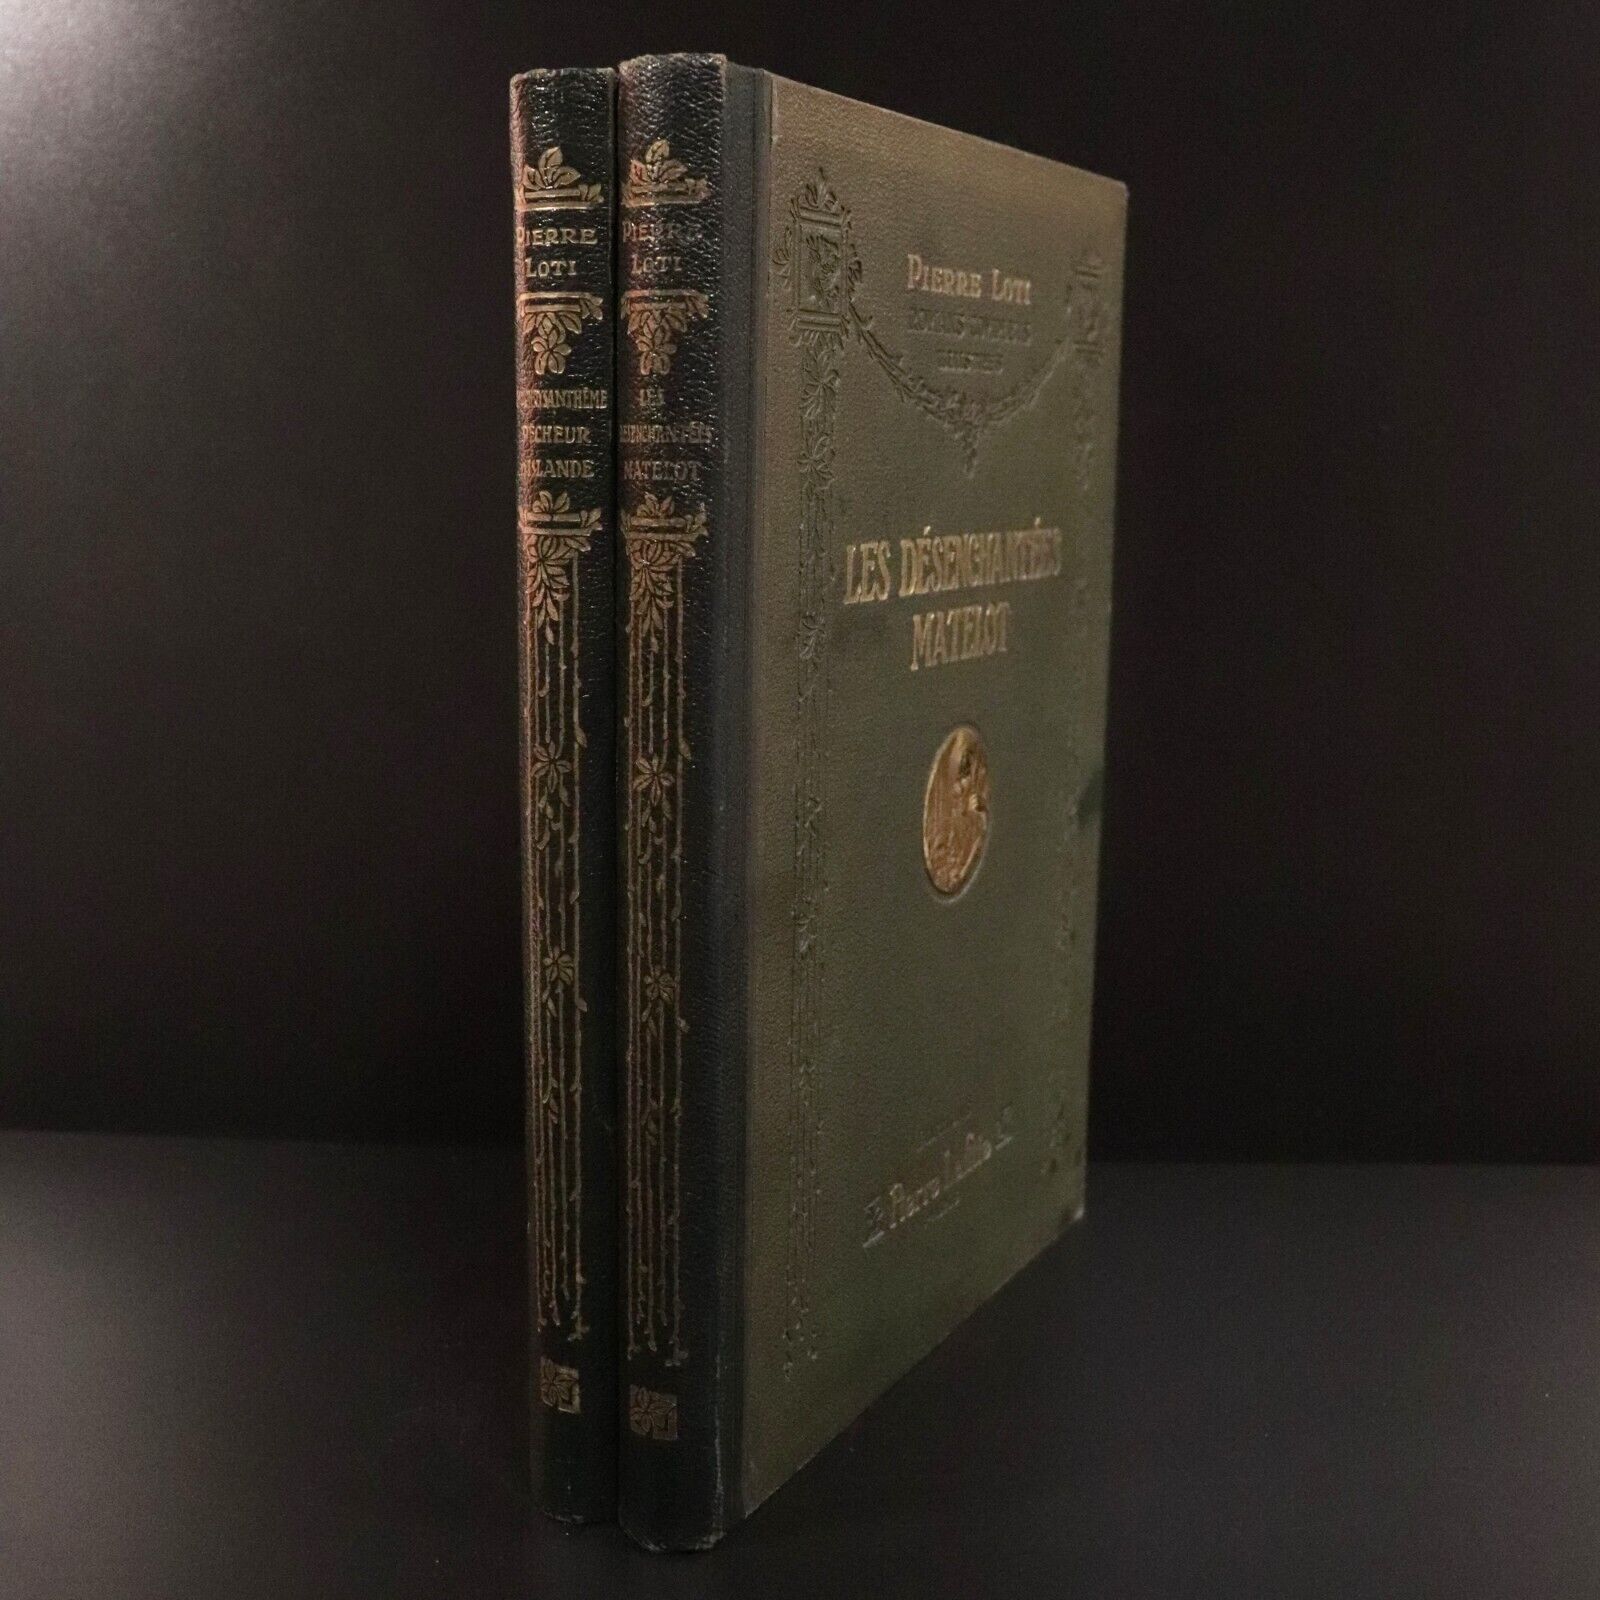 1923 2vol Romans Complets Illustres De Pierre Loti Antique French Fiction Books